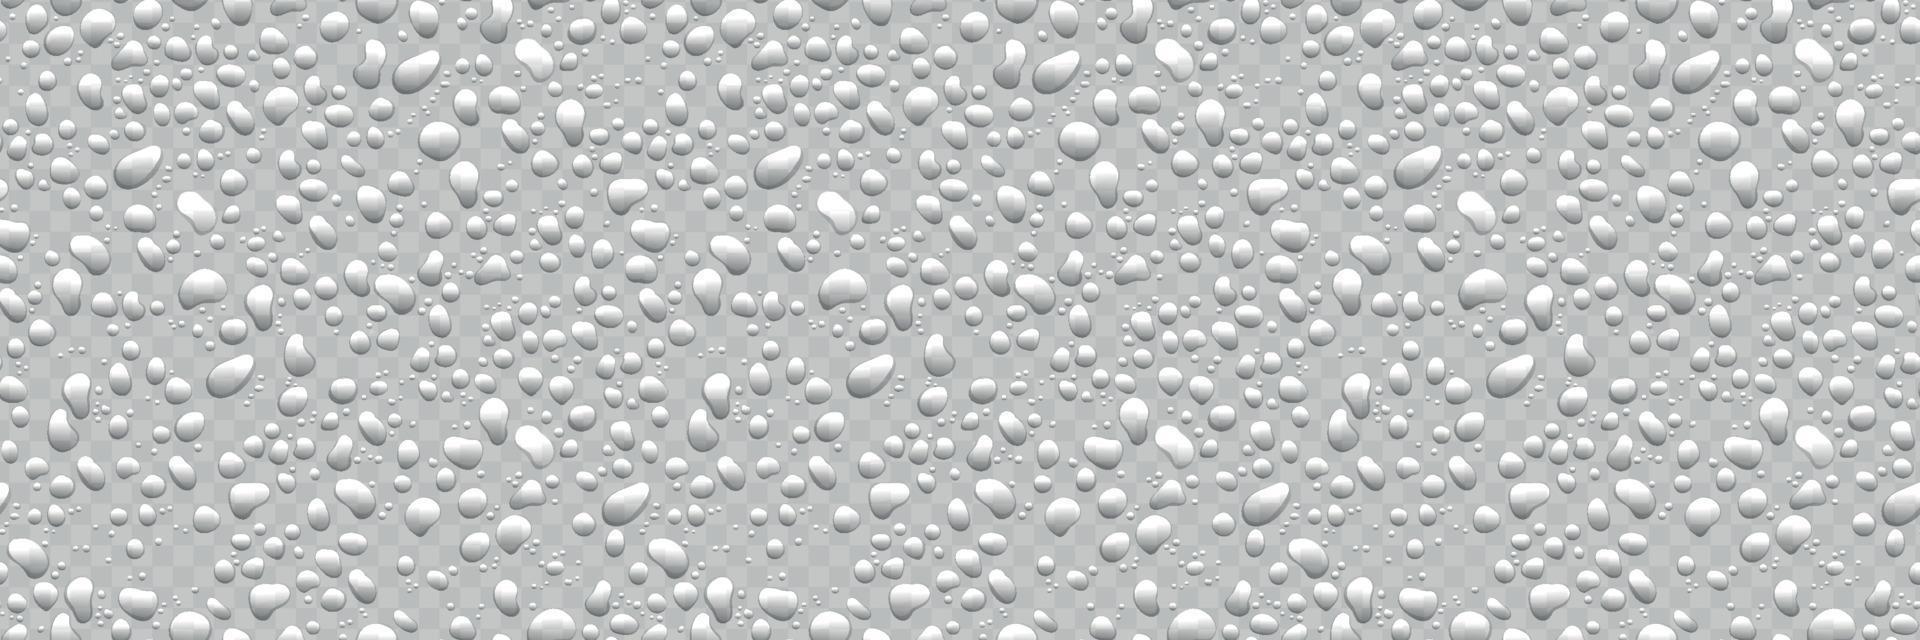 vatten droppar på vit bakgrund. kondensation av realistisk ren regn droppar vektor